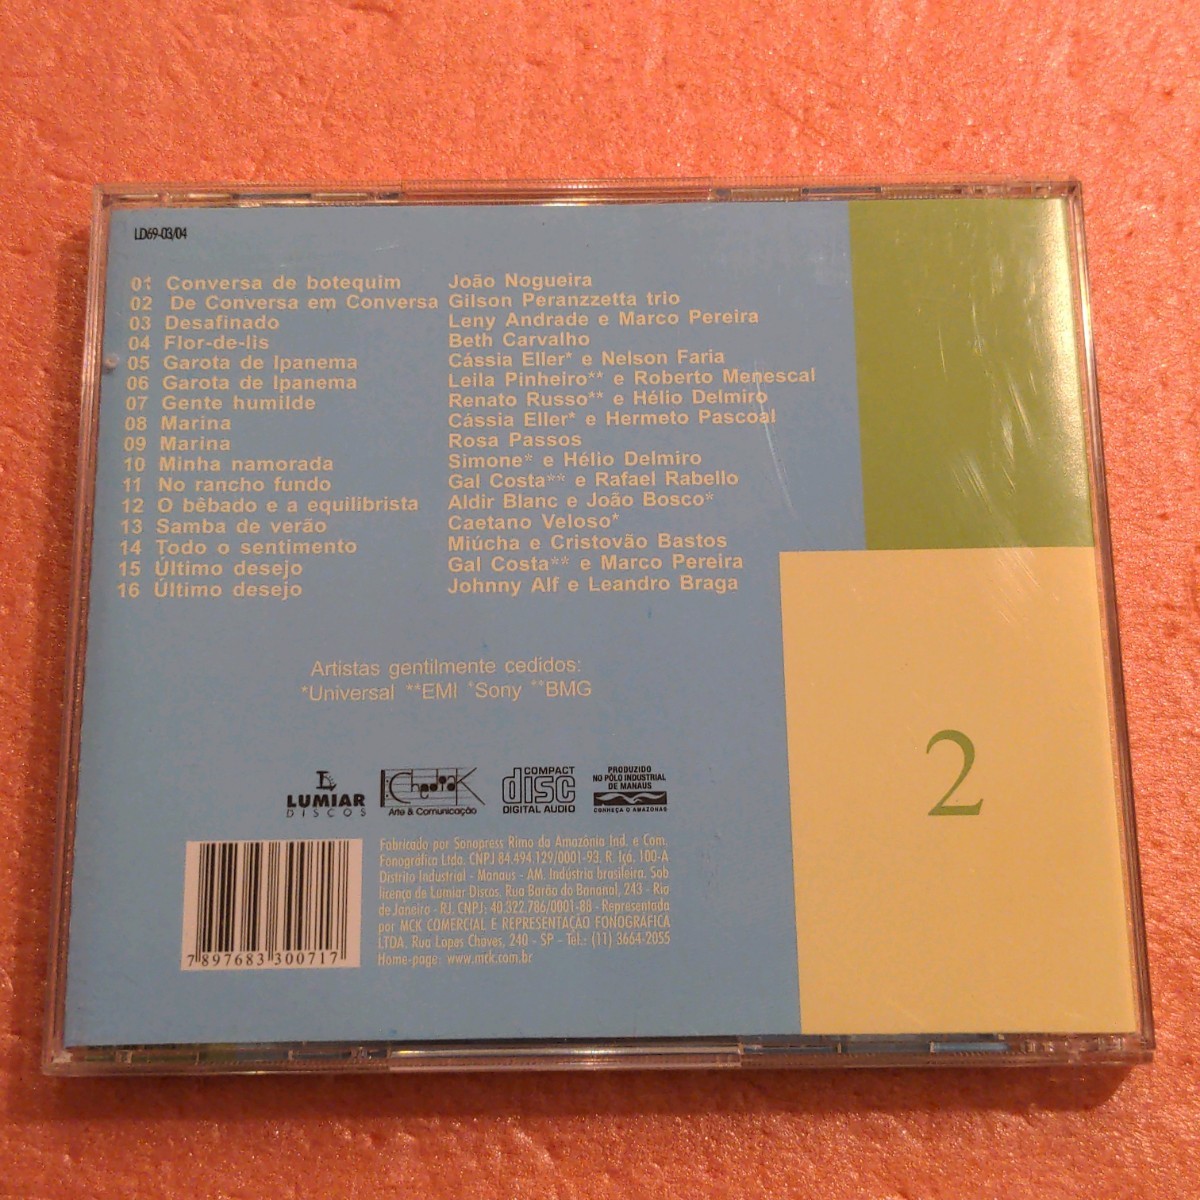 CD V.A. Songbook As 101 Melhores Cancoes Do Seculo XX Selecao Almir Chediak 2 Joao Nogueira Gilson Peranzzetta Trio ブラジル_画像3